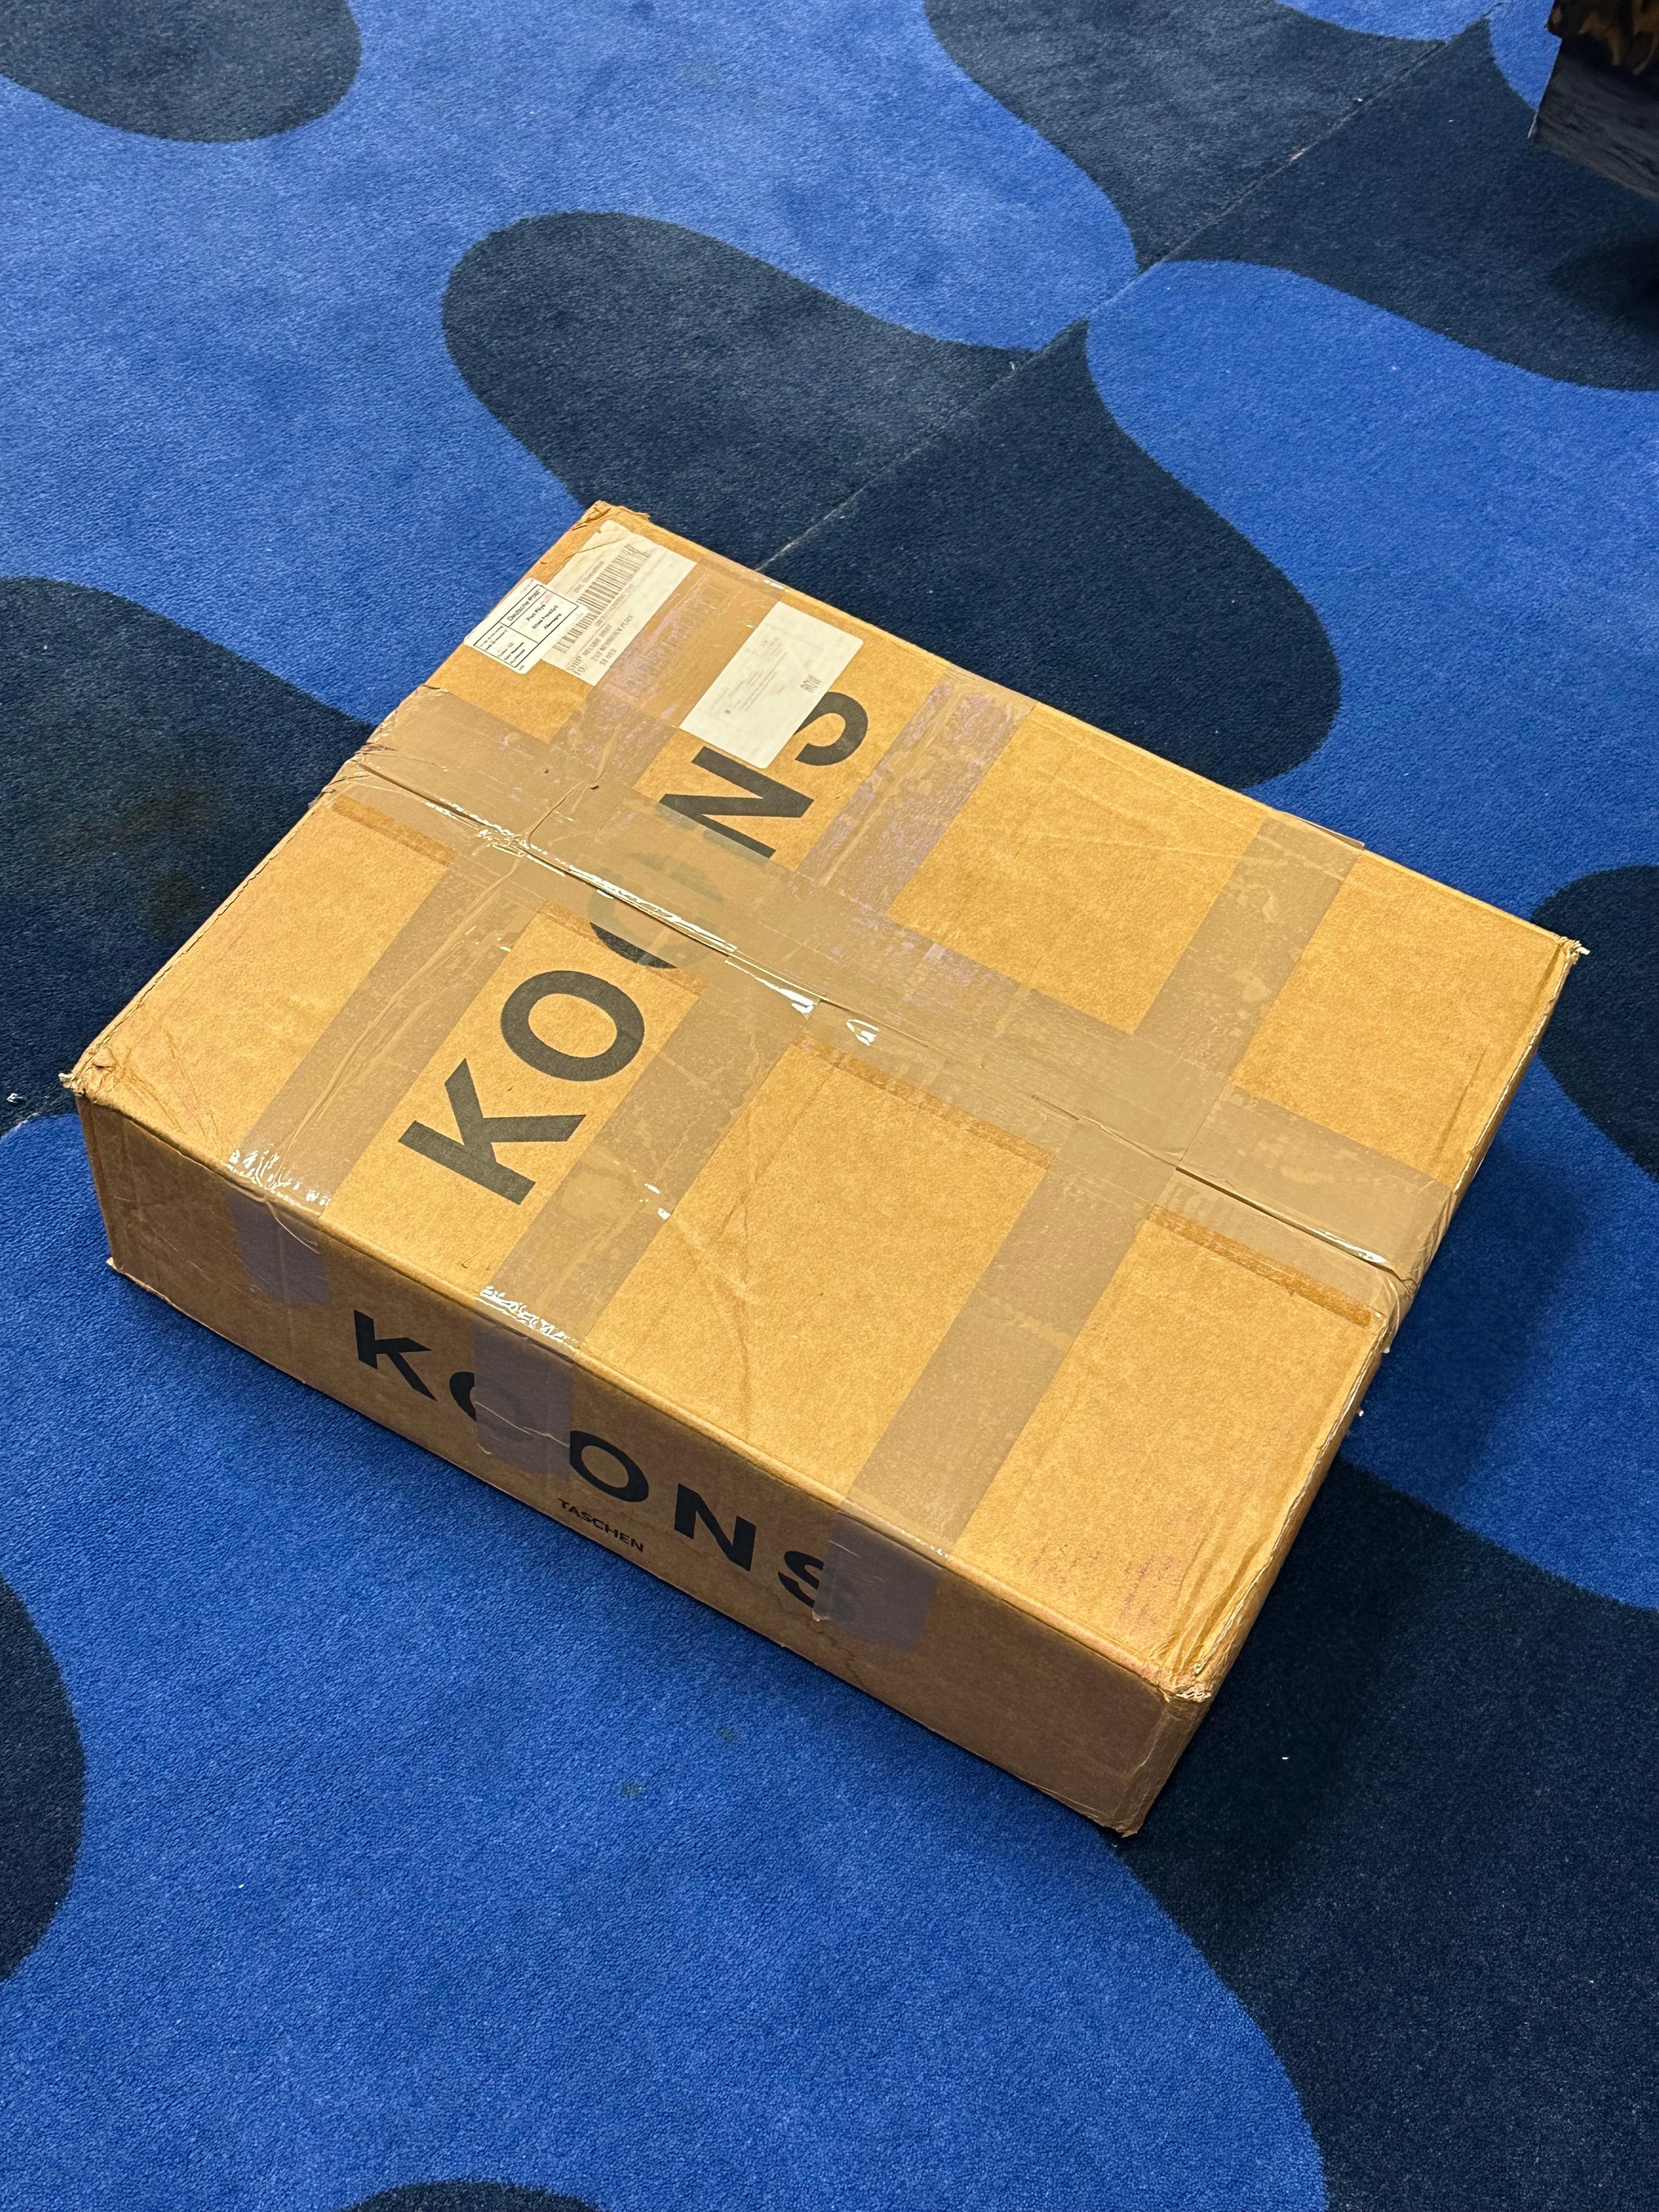 Jeff Koons
2007
#199/1500
Couverture rigide dans un coffret à clapet
33 x 44 cm / 17 3/8 x 13 Inches
606 pages

Publié par Taschen
Édition collector limitée à 1 500 exemplaires, numérotés et signés par Jeff Koons.

En excellent état, intact.

Ce